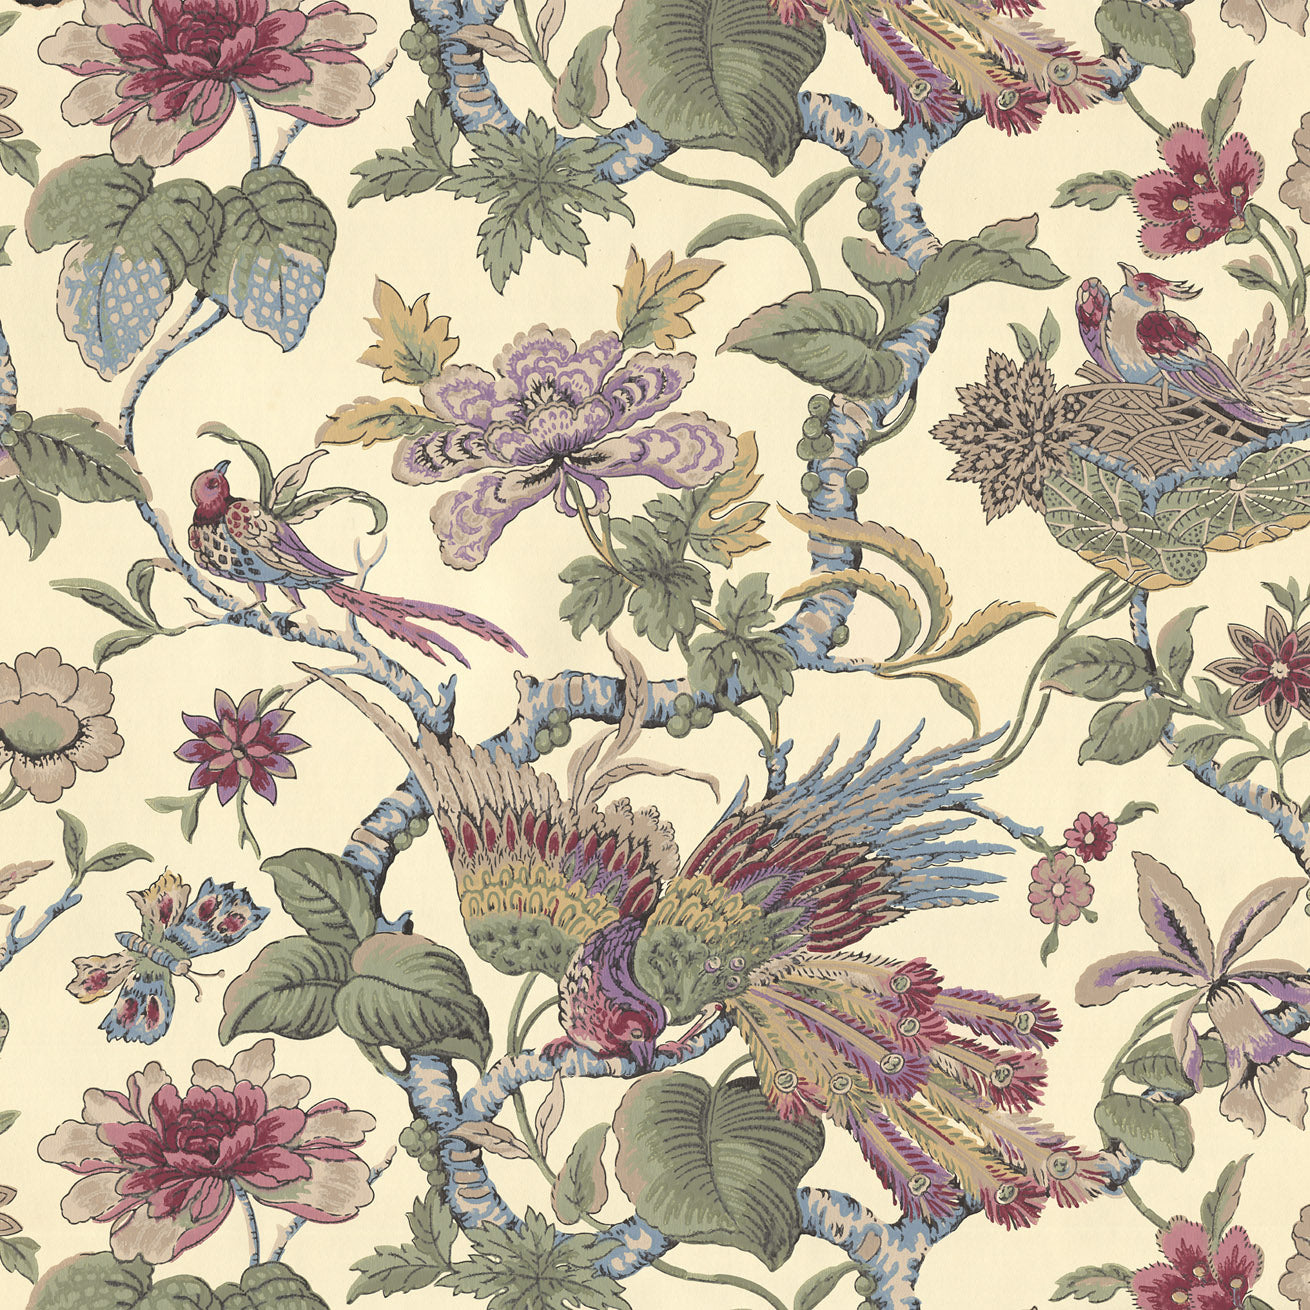 Floral Vine with Birds, Nest, Butterflies - Antique Wallpaper Remnant